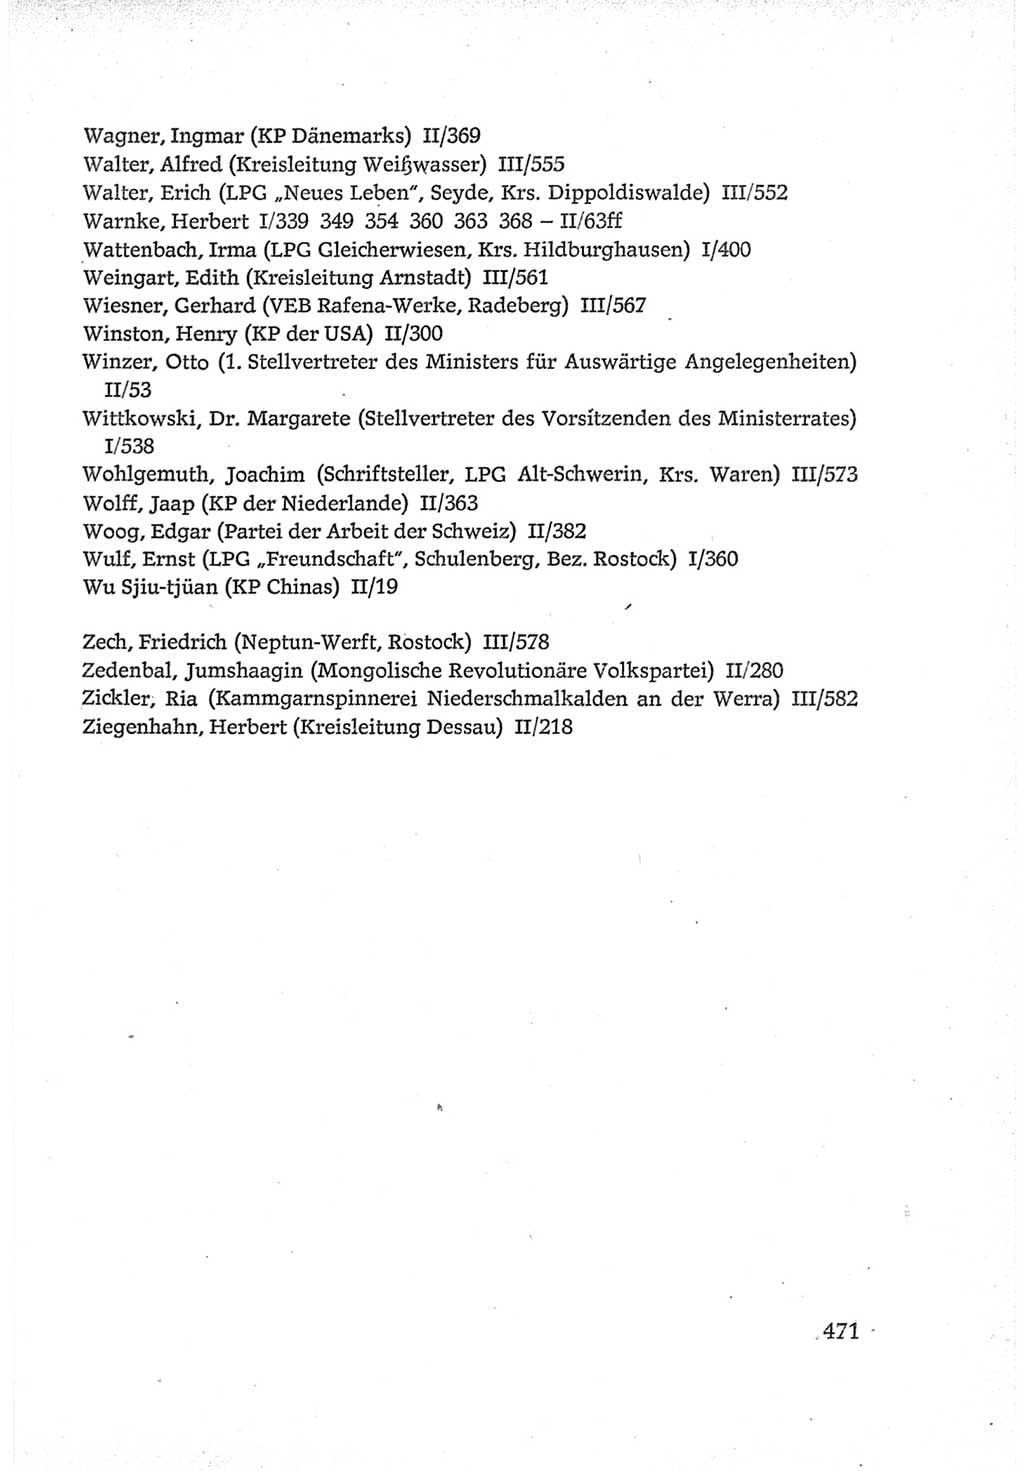 Protokoll der Verhandlungen des Ⅵ. Parteitages der Sozialistischen Einheitspartei Deutschlands (SED) [Deutsche Demokratische Republik (DDR)] 1963, Band Ⅳ, Seite 471 (Prot. Verh. Ⅵ. PT SED DDR 1963, Bd. Ⅳ, S. 471)